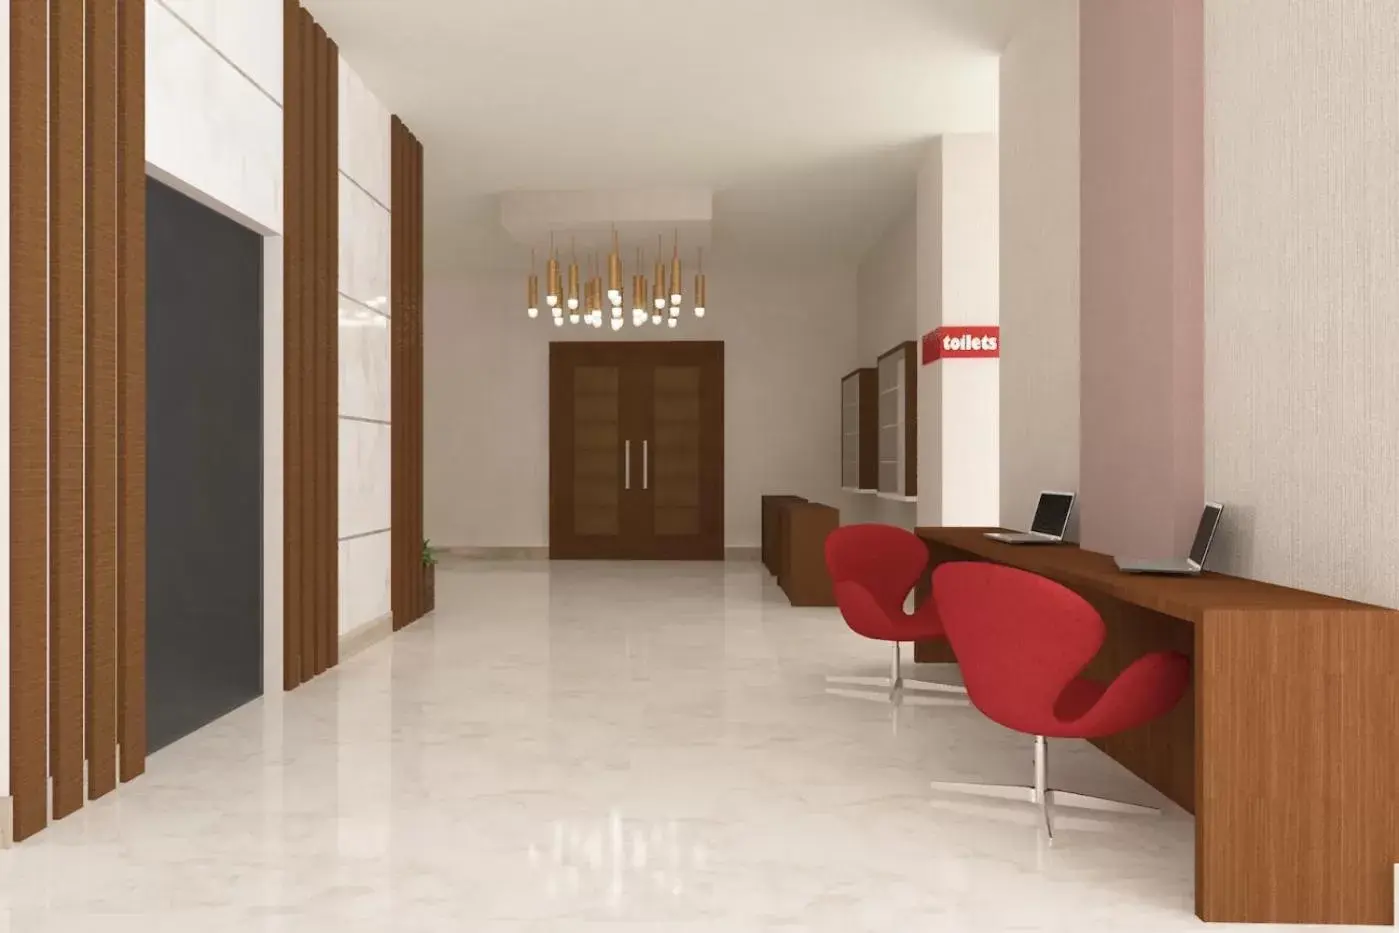 Lobby or reception, Lobby/Reception in Ramada by Wyndham Van